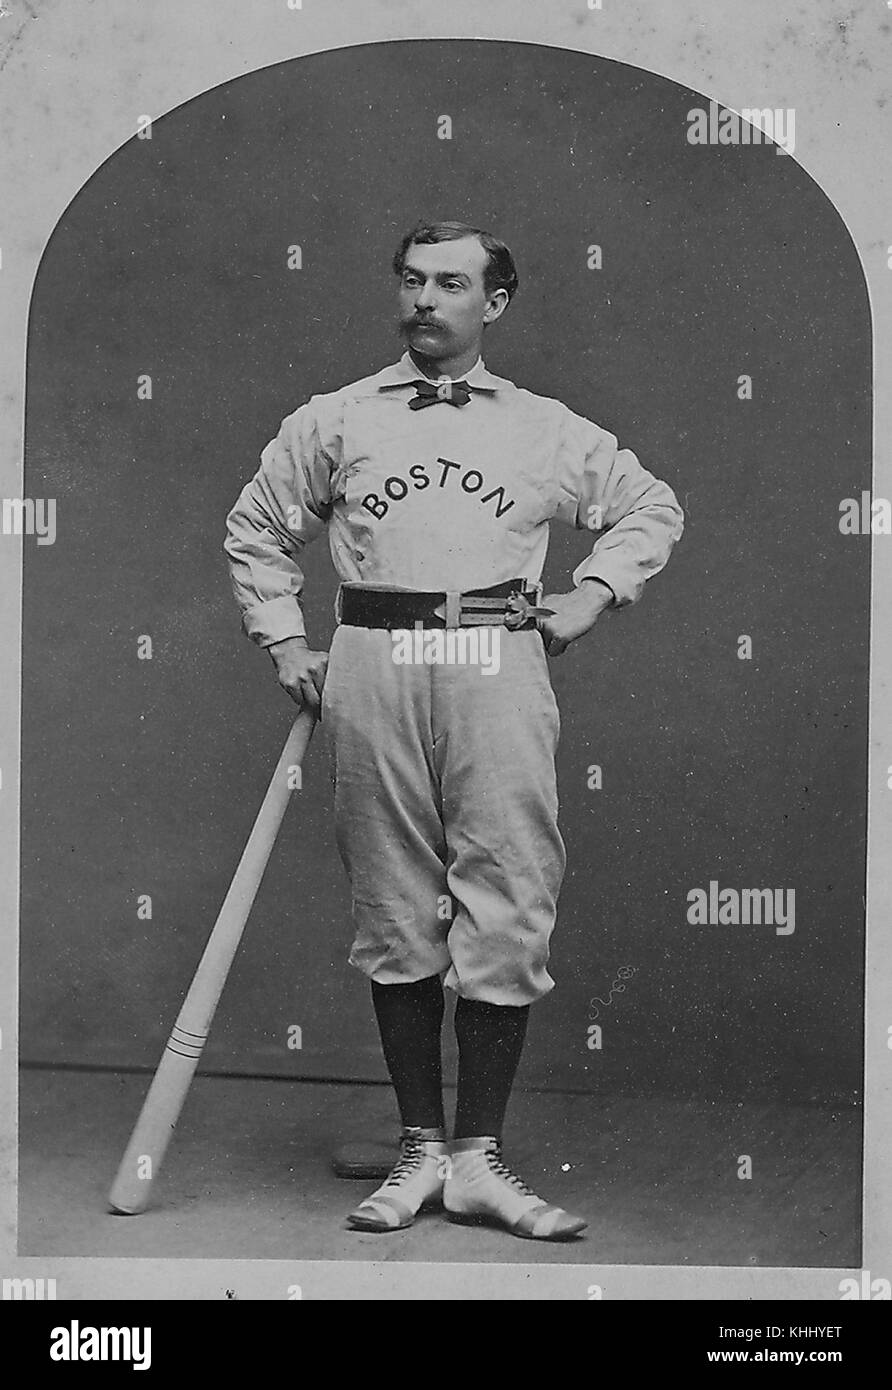 A piena lunghezza Ritratto di tommy beals, secondo baseman per Boston red calze, in uniforme, tenendo un bat, 1874. dalla biblioteca pubblica di new york. Foto Stock